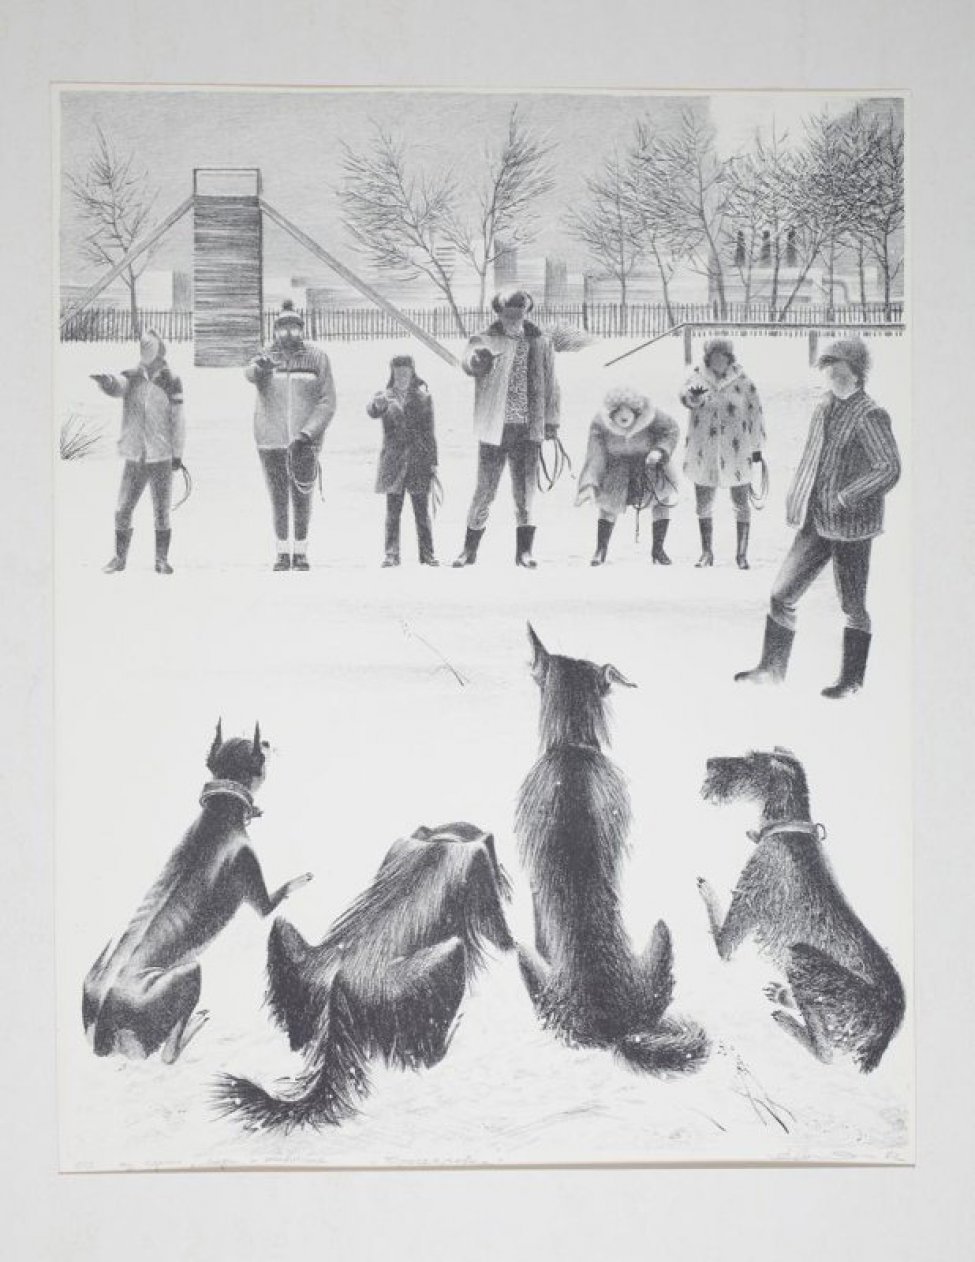 На переднем плане изображены со спины четыре сидящие на снегу собаки. В центре композиции группа людей.